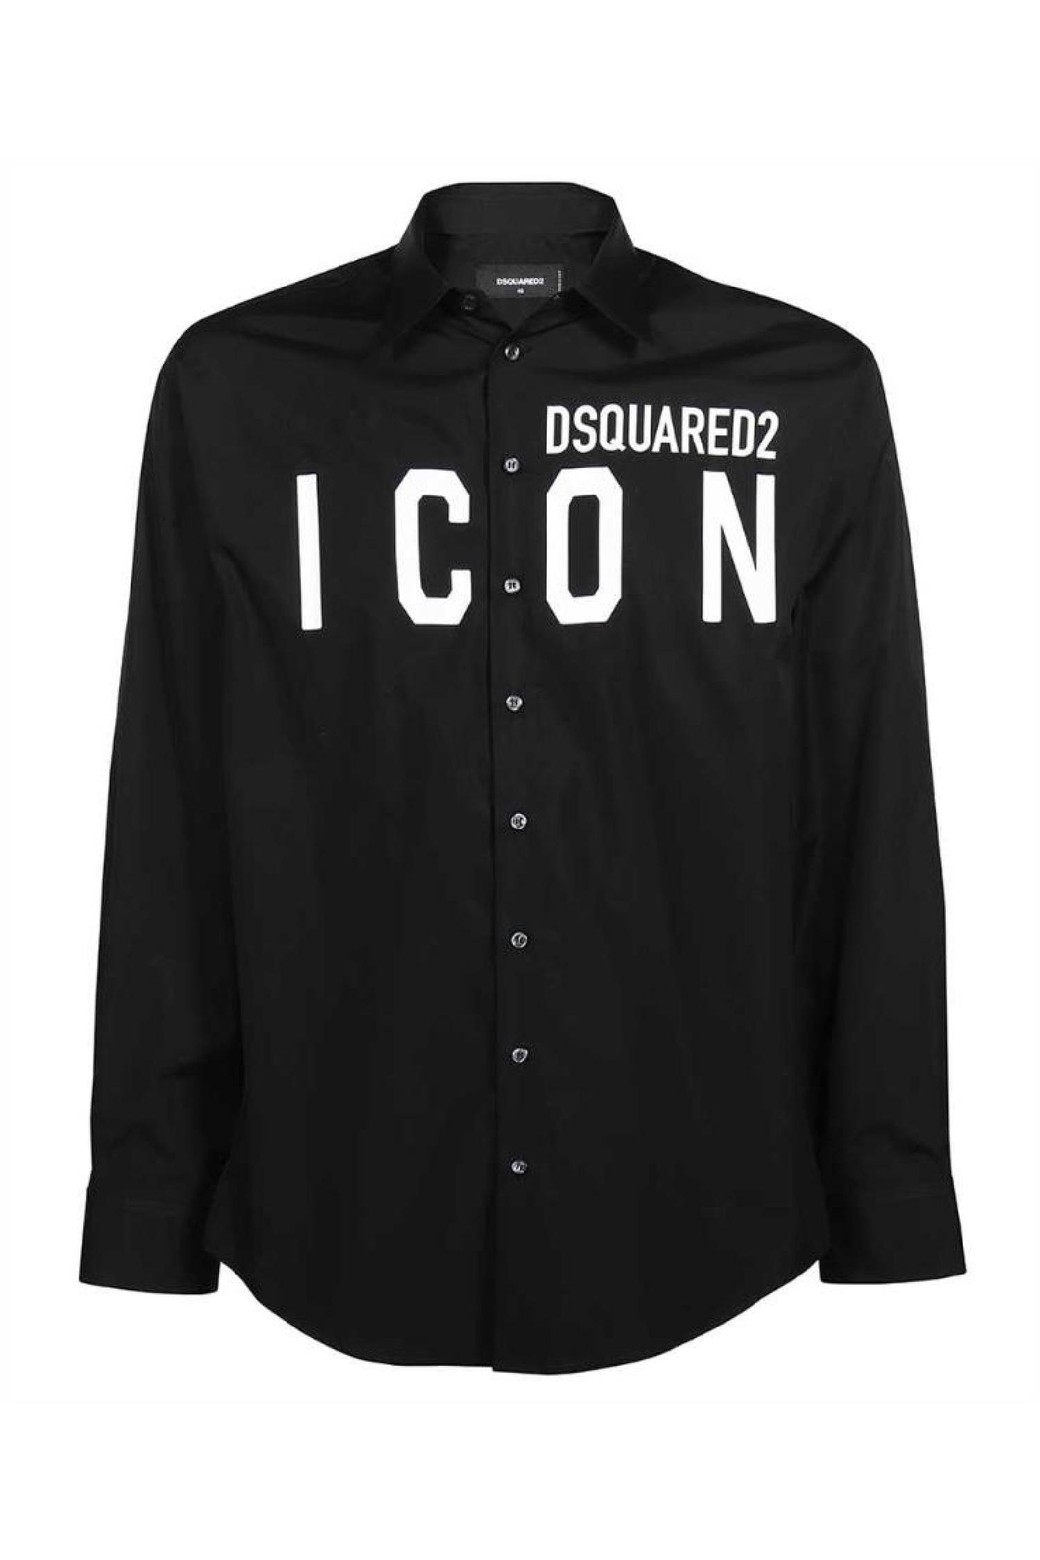 디스퀘어드2 남성 셔츠 Dsquared2 S79DL0026 S36275 ICON DROP Shirt Black_Dsquared2